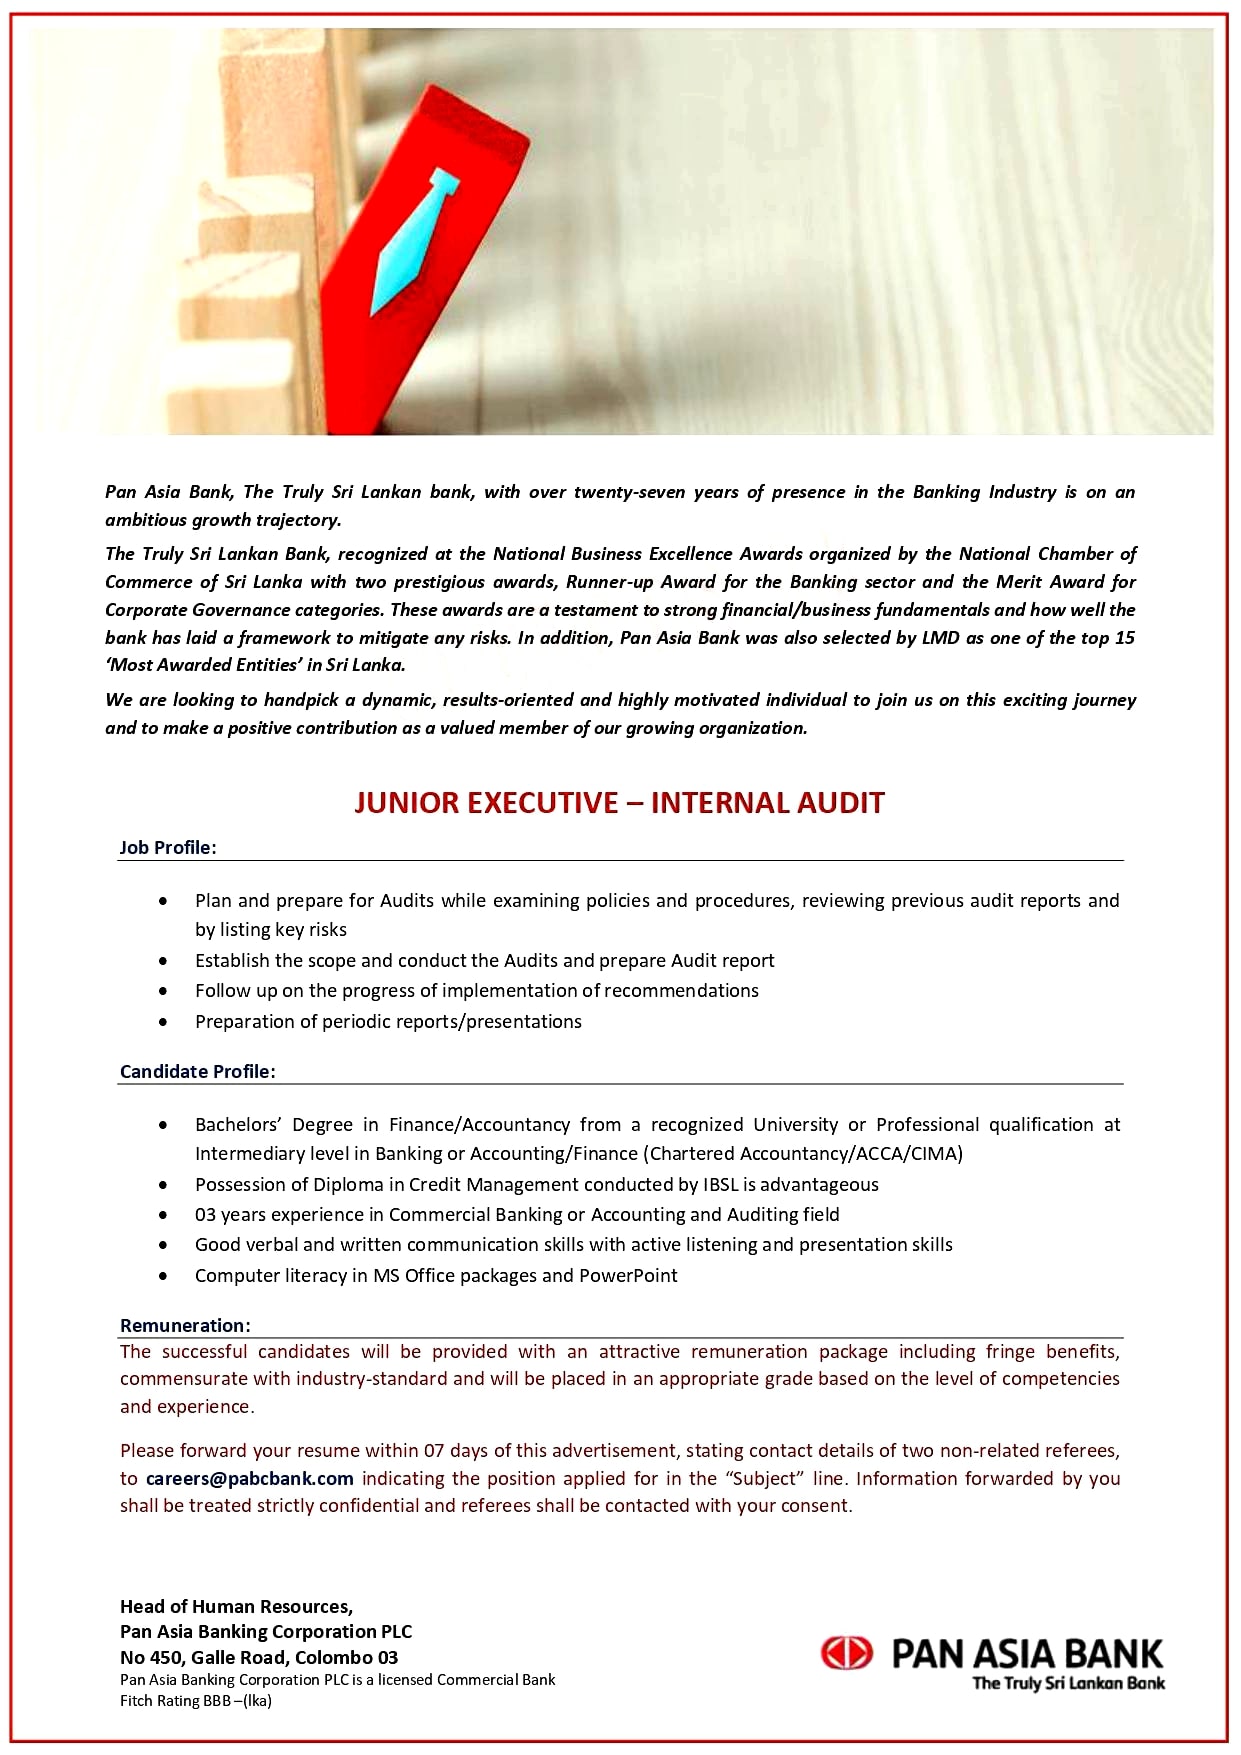 Junior Executive (Internal Audit) Job Vacancy - Pan Asia Bank Jobs Vacancies